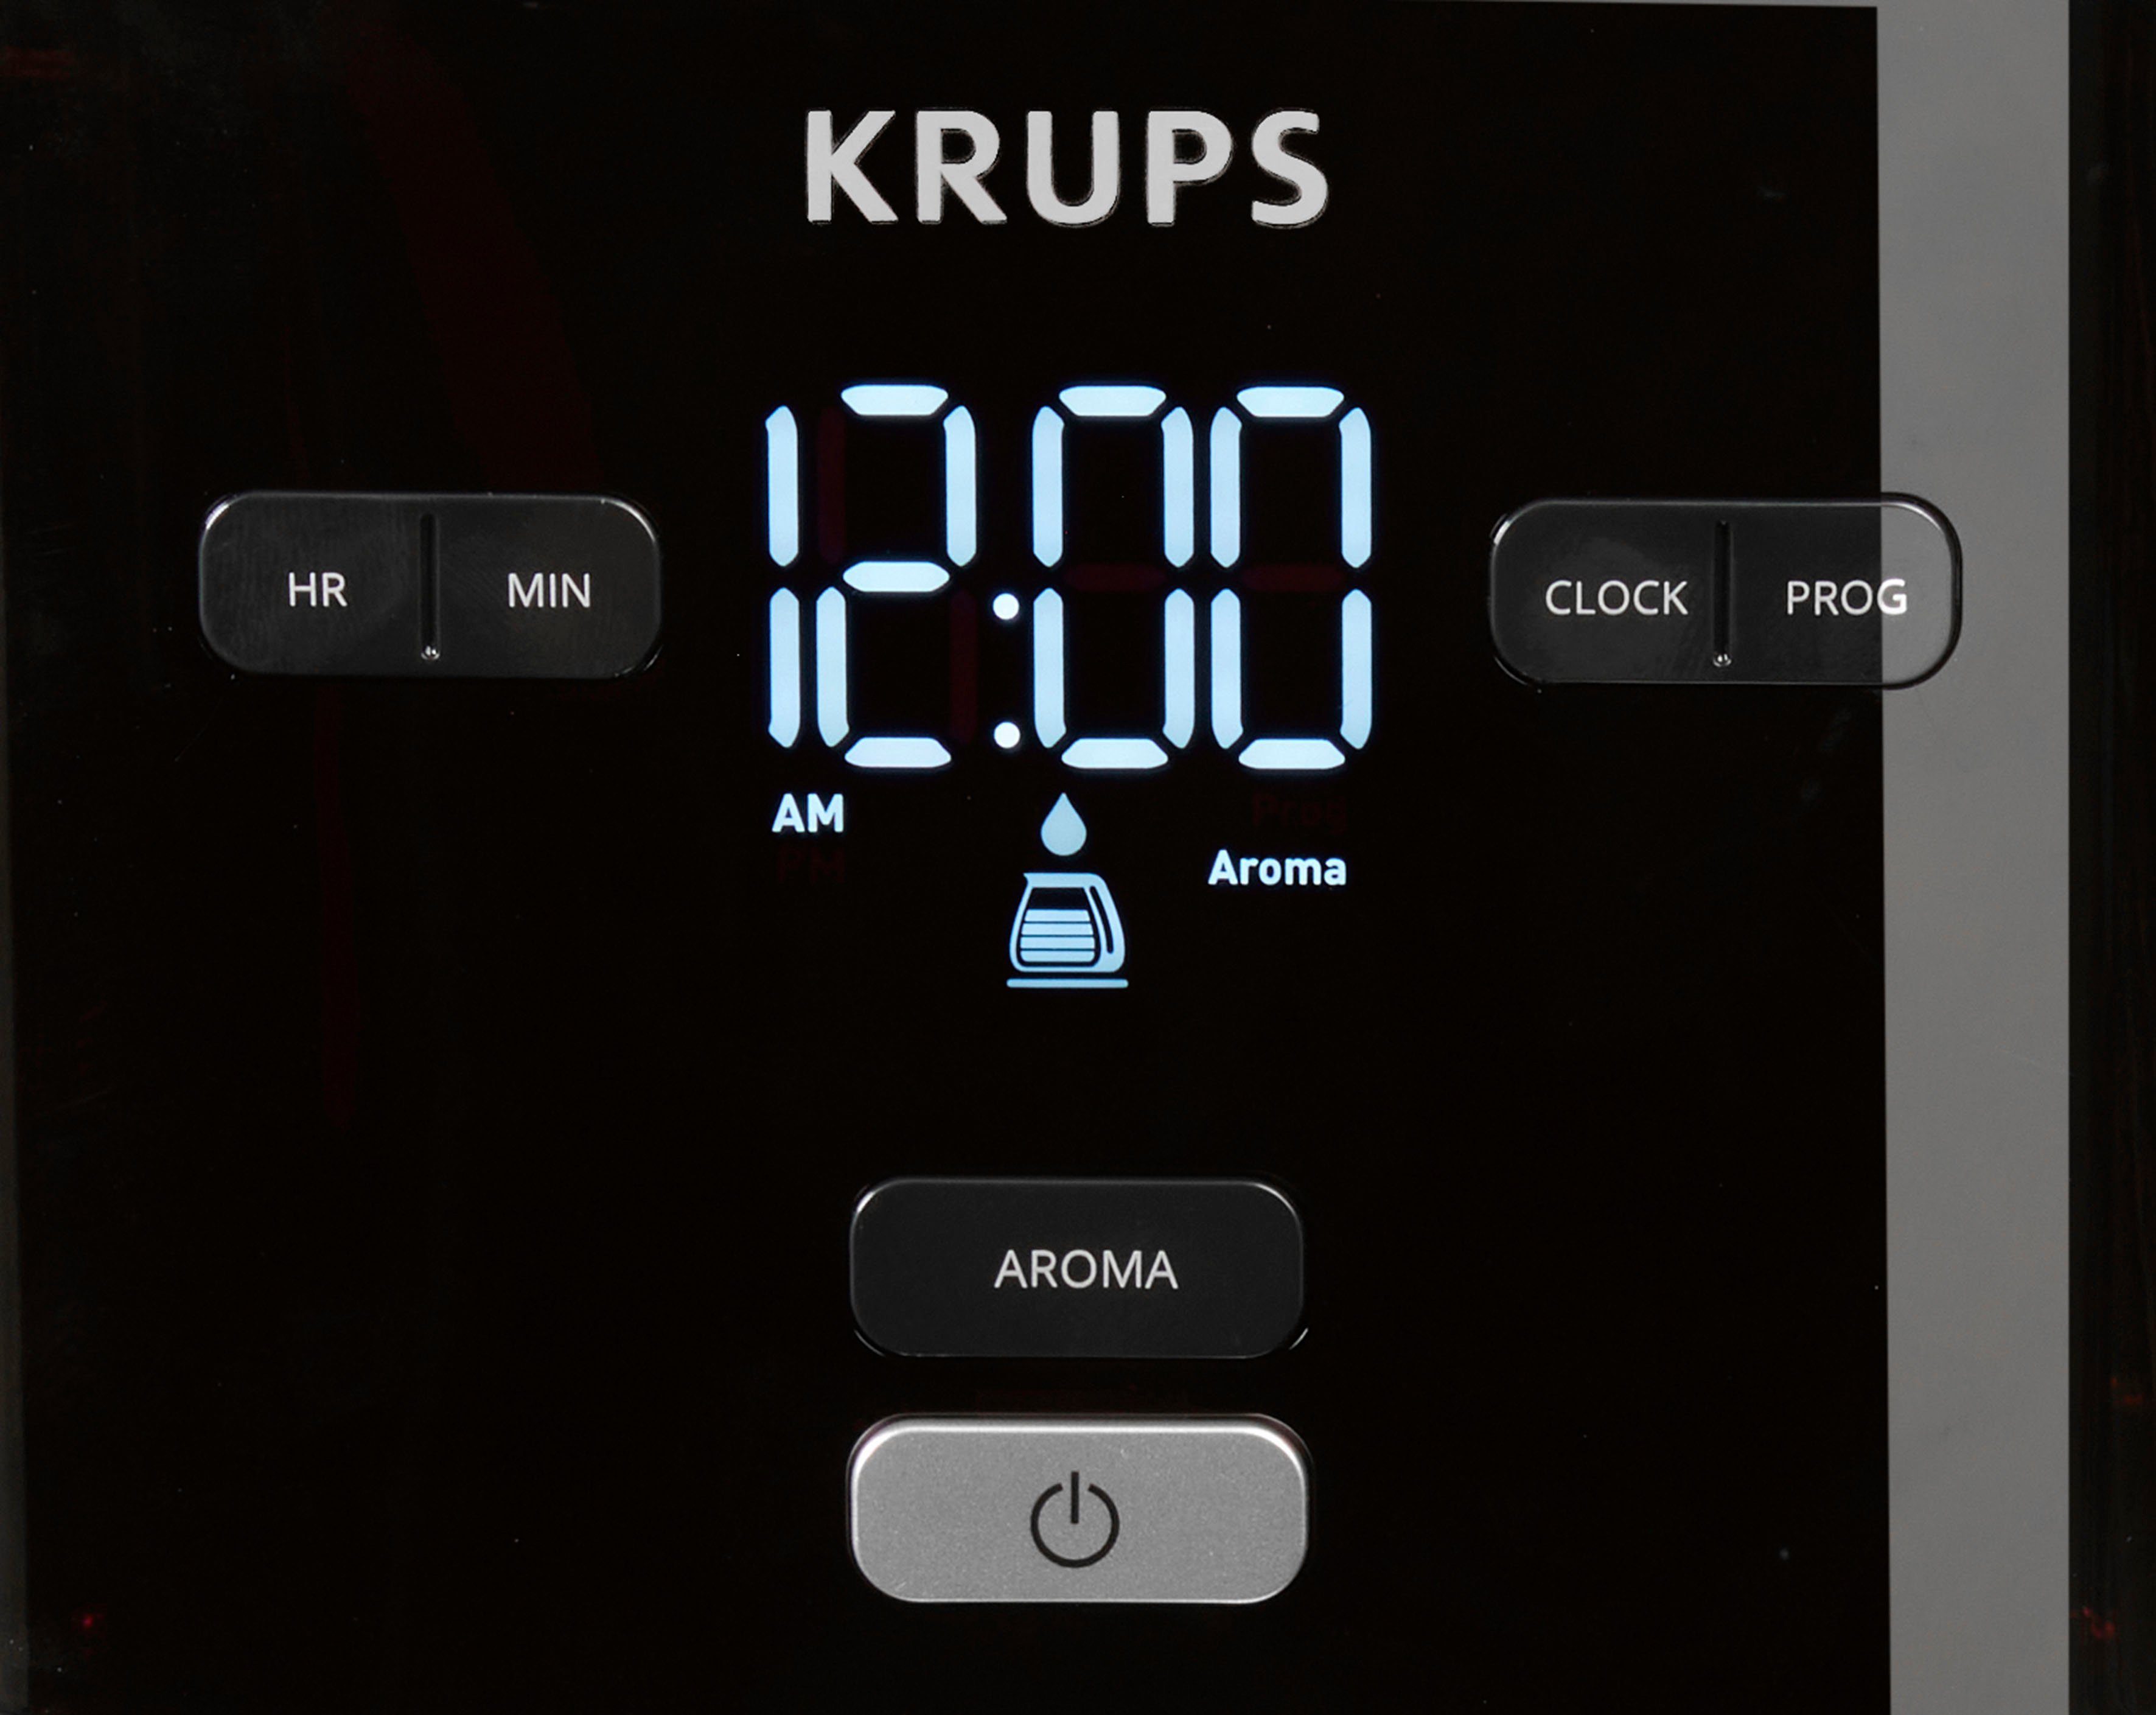 Krups Filterkaffeemaschine Minuten Kaffeekanne, KM6008 nach 30 Smart'n 1,25l Light, Abschaltung 24-Std-Timer, automatische